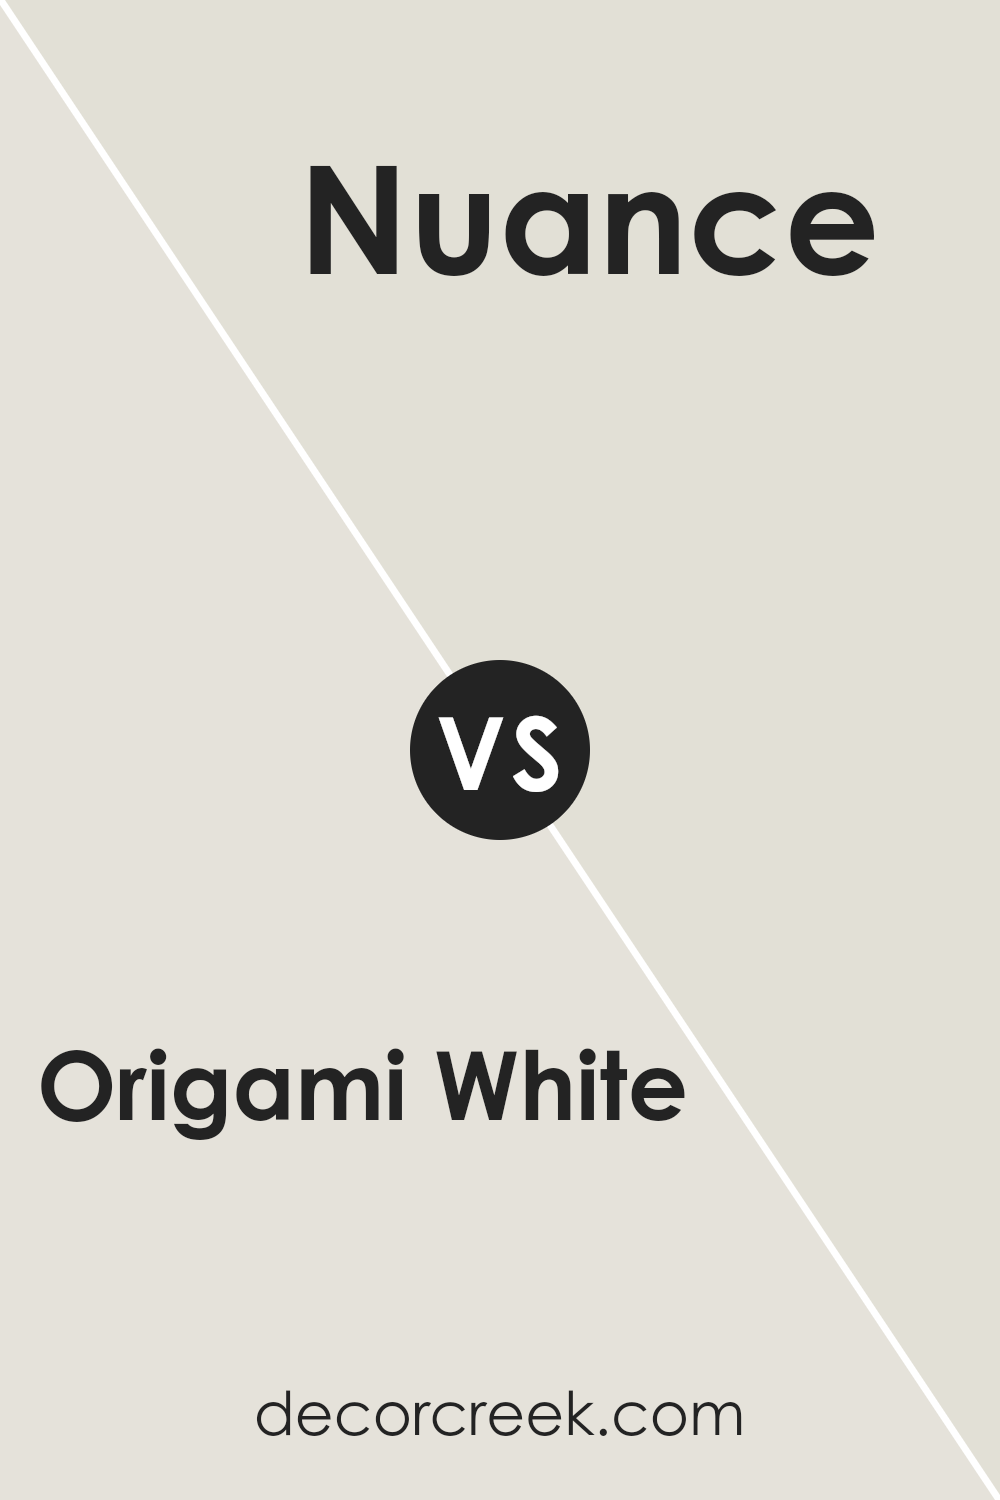 origami_white_sw_7636_vs_nuance_sw_7049